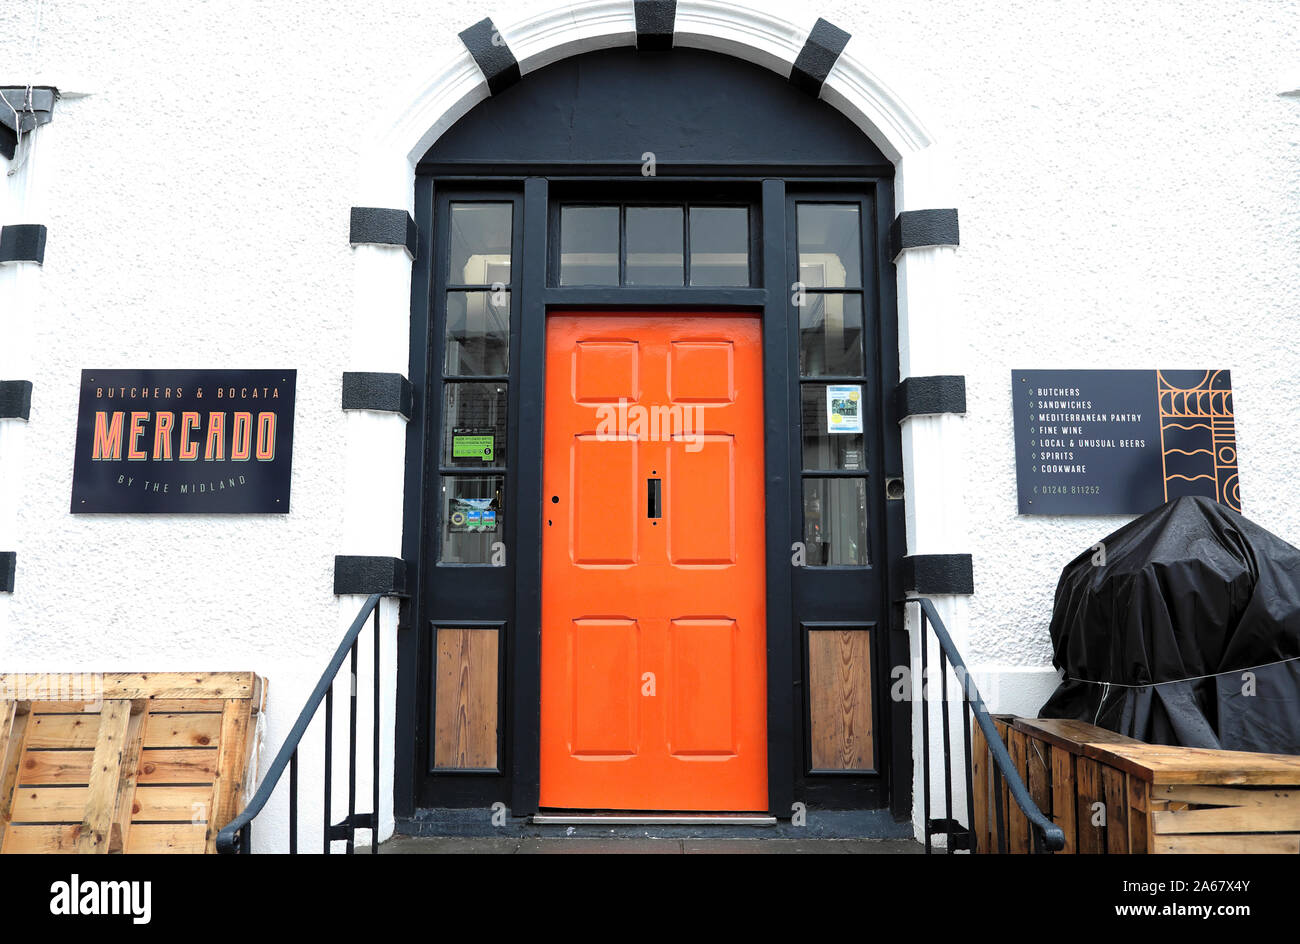 Arancione e nero porta anteriore ingresso al Mercado dalla Midland macellai e Bocata specialità alimentari, wine store in Beaumaris Wales UK KATHY DEWITT Foto Stock